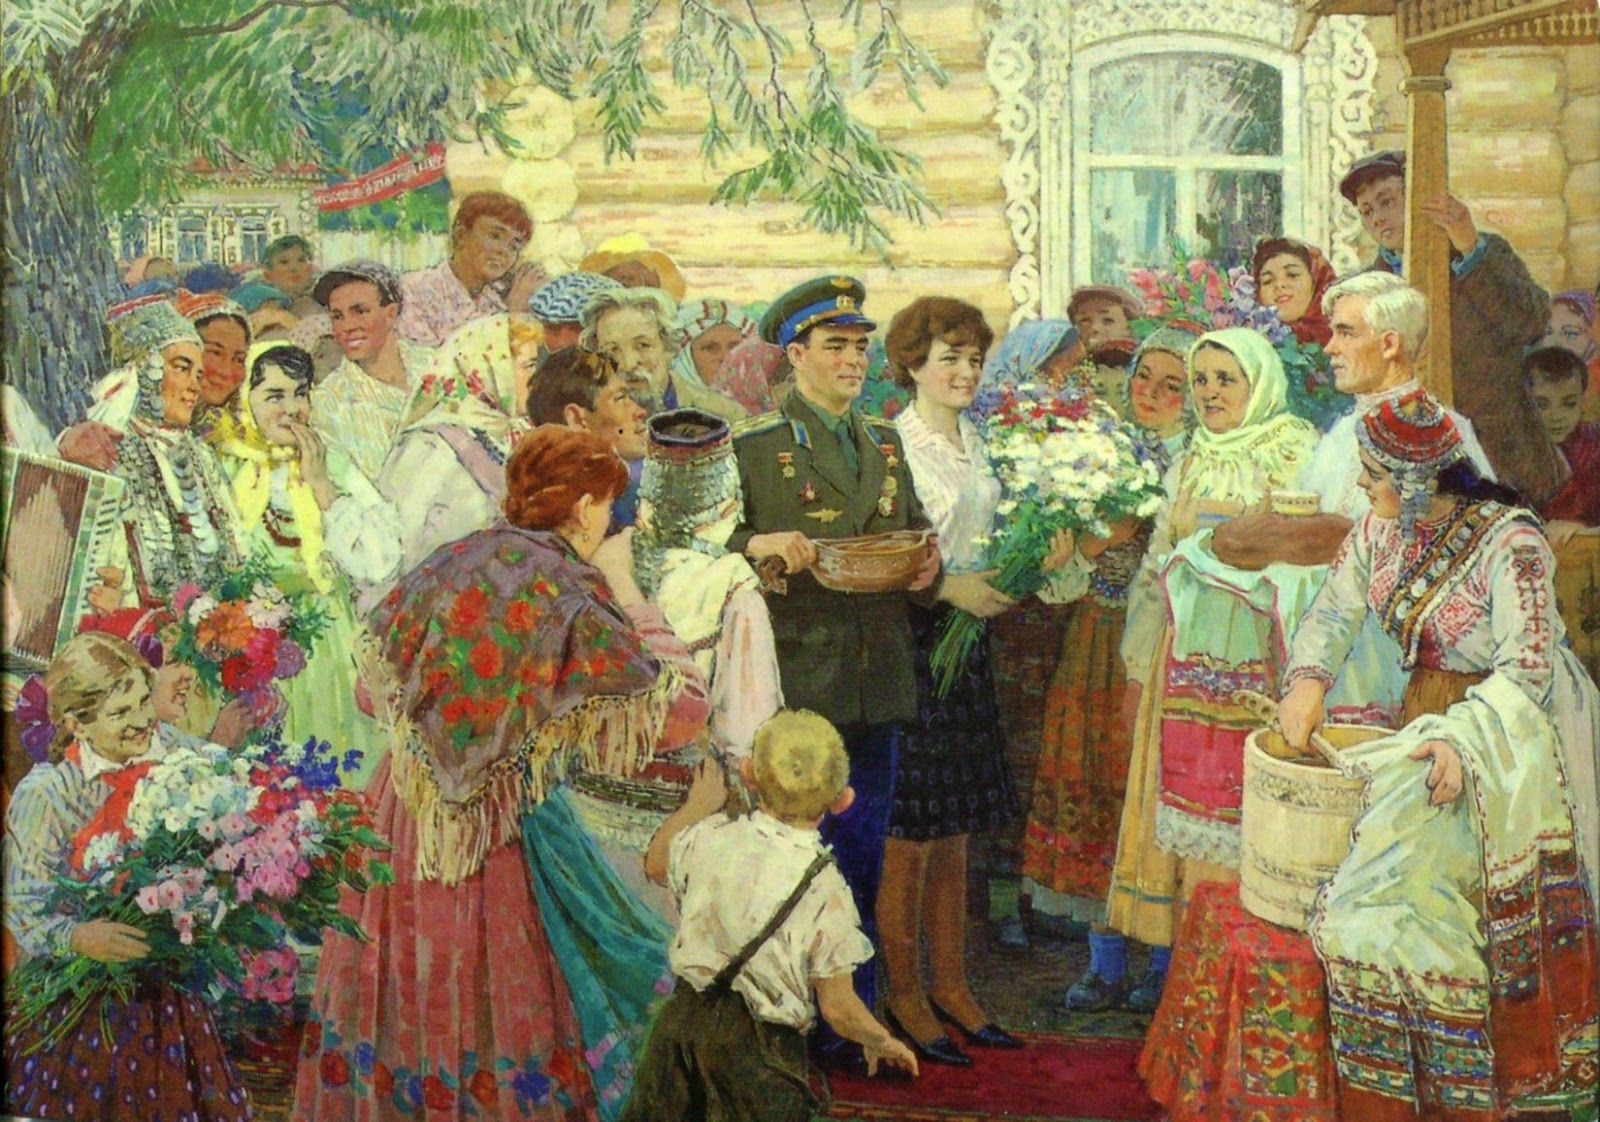 Изображена веселая деревенская свадьба. Овчинников Чувашский художник картины.